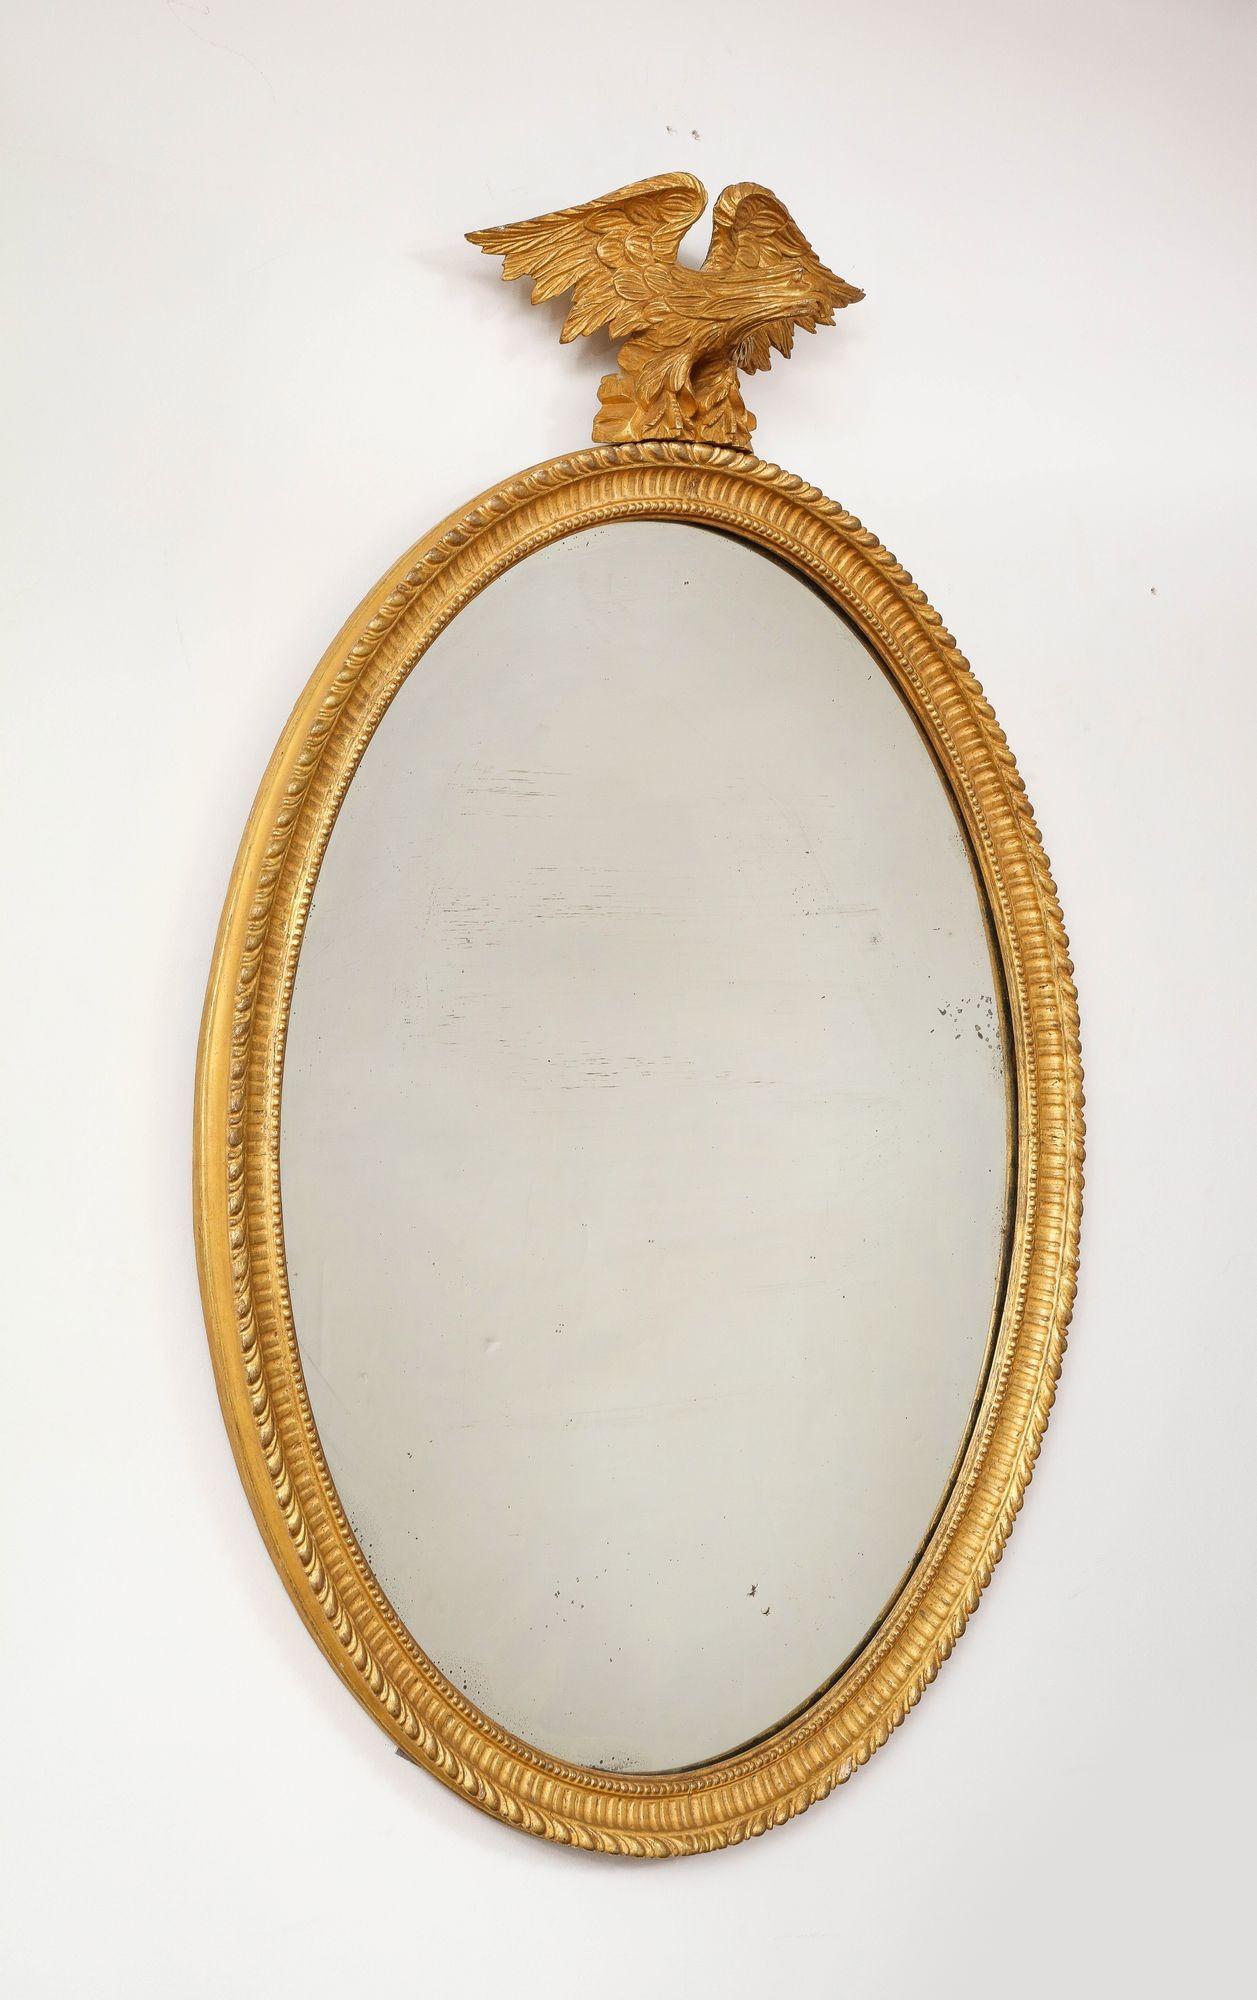 Miroir classique ovale en bois doré de George III, la crête d'aigle sculptée reposant sur une base en rocaille, surmontant un cadre ovale sculpté de godrons avec cannelures et bord intérieur perlé, conservant la plaque de miroir en verre au mercure